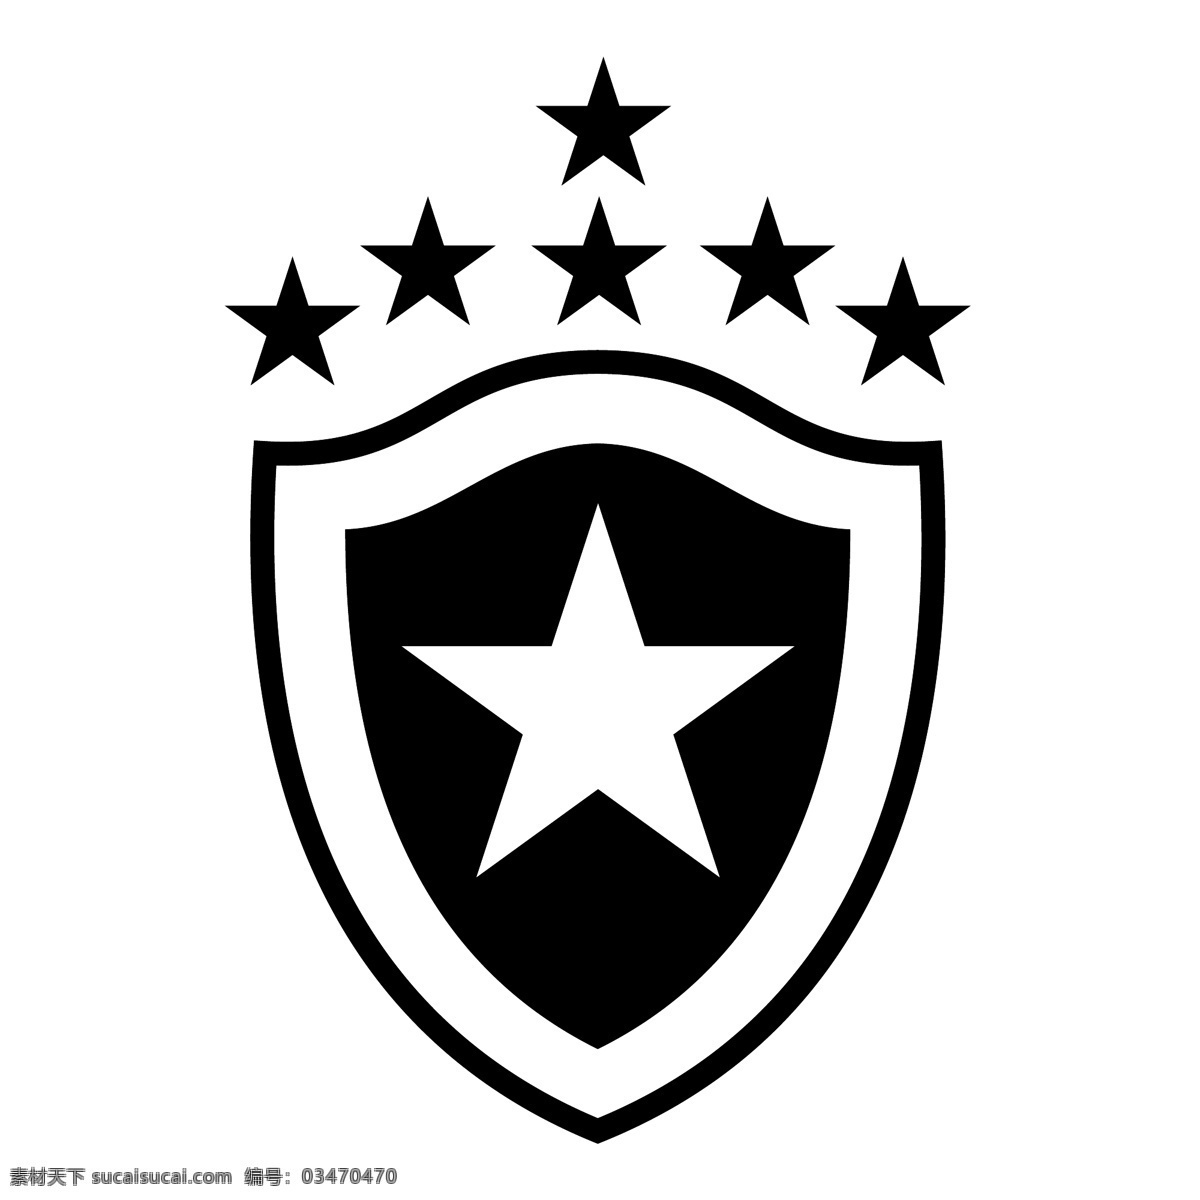 博塔 弗戈 足球 俱乐部 新 汉堡 rs 免费 标志 psd源文件 logo设计